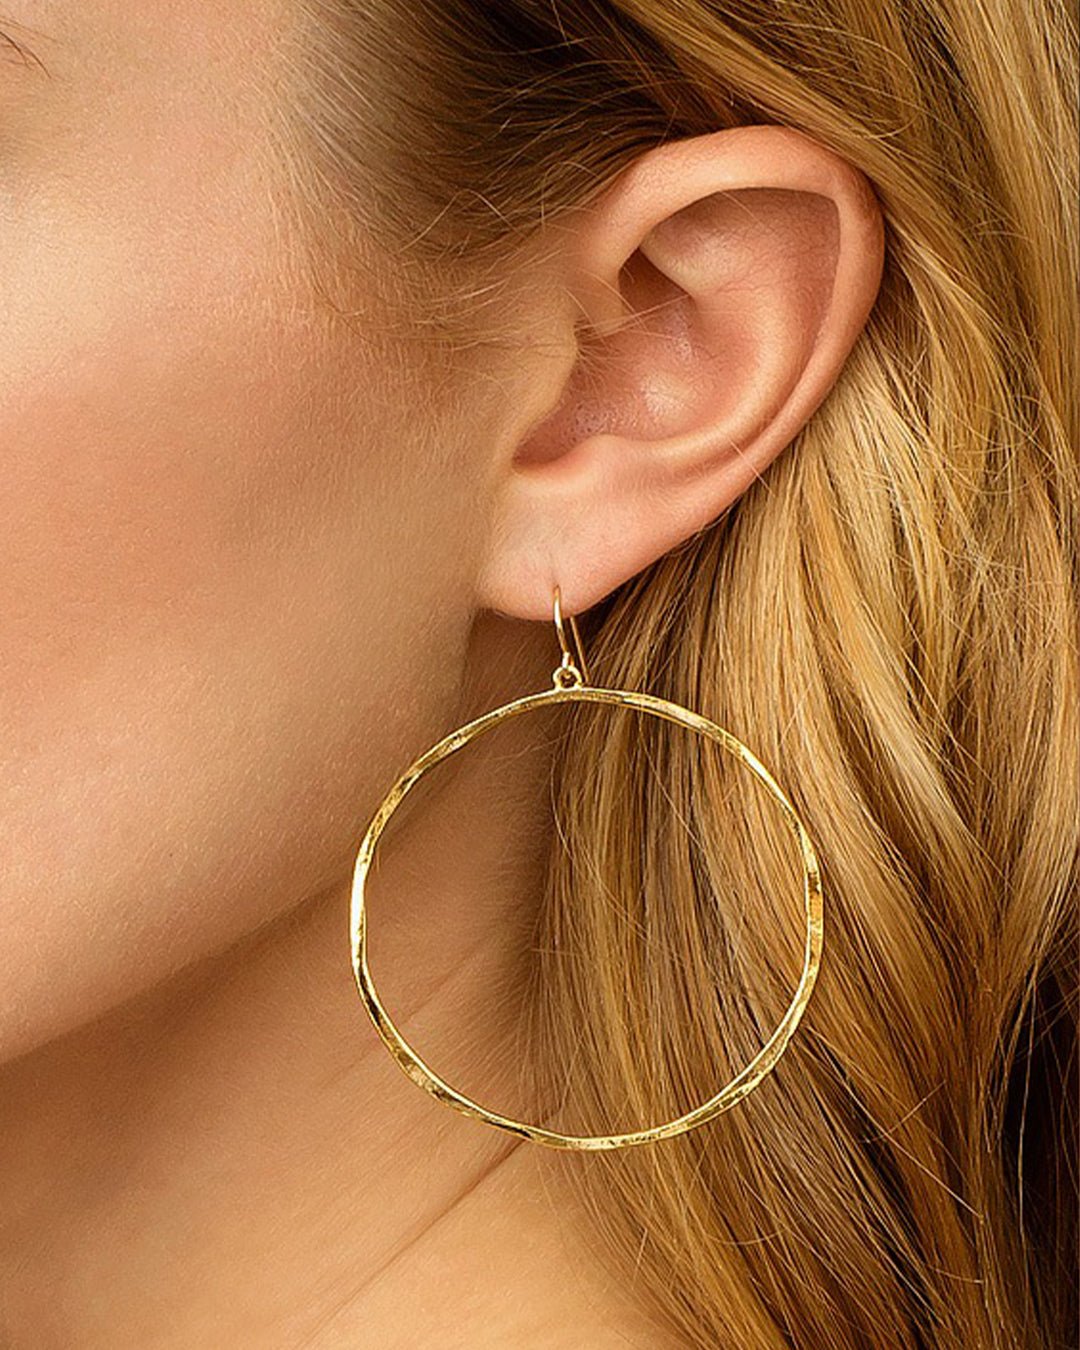 G Ring Earrings Drop Hoop Earrings || option::Gold Plated